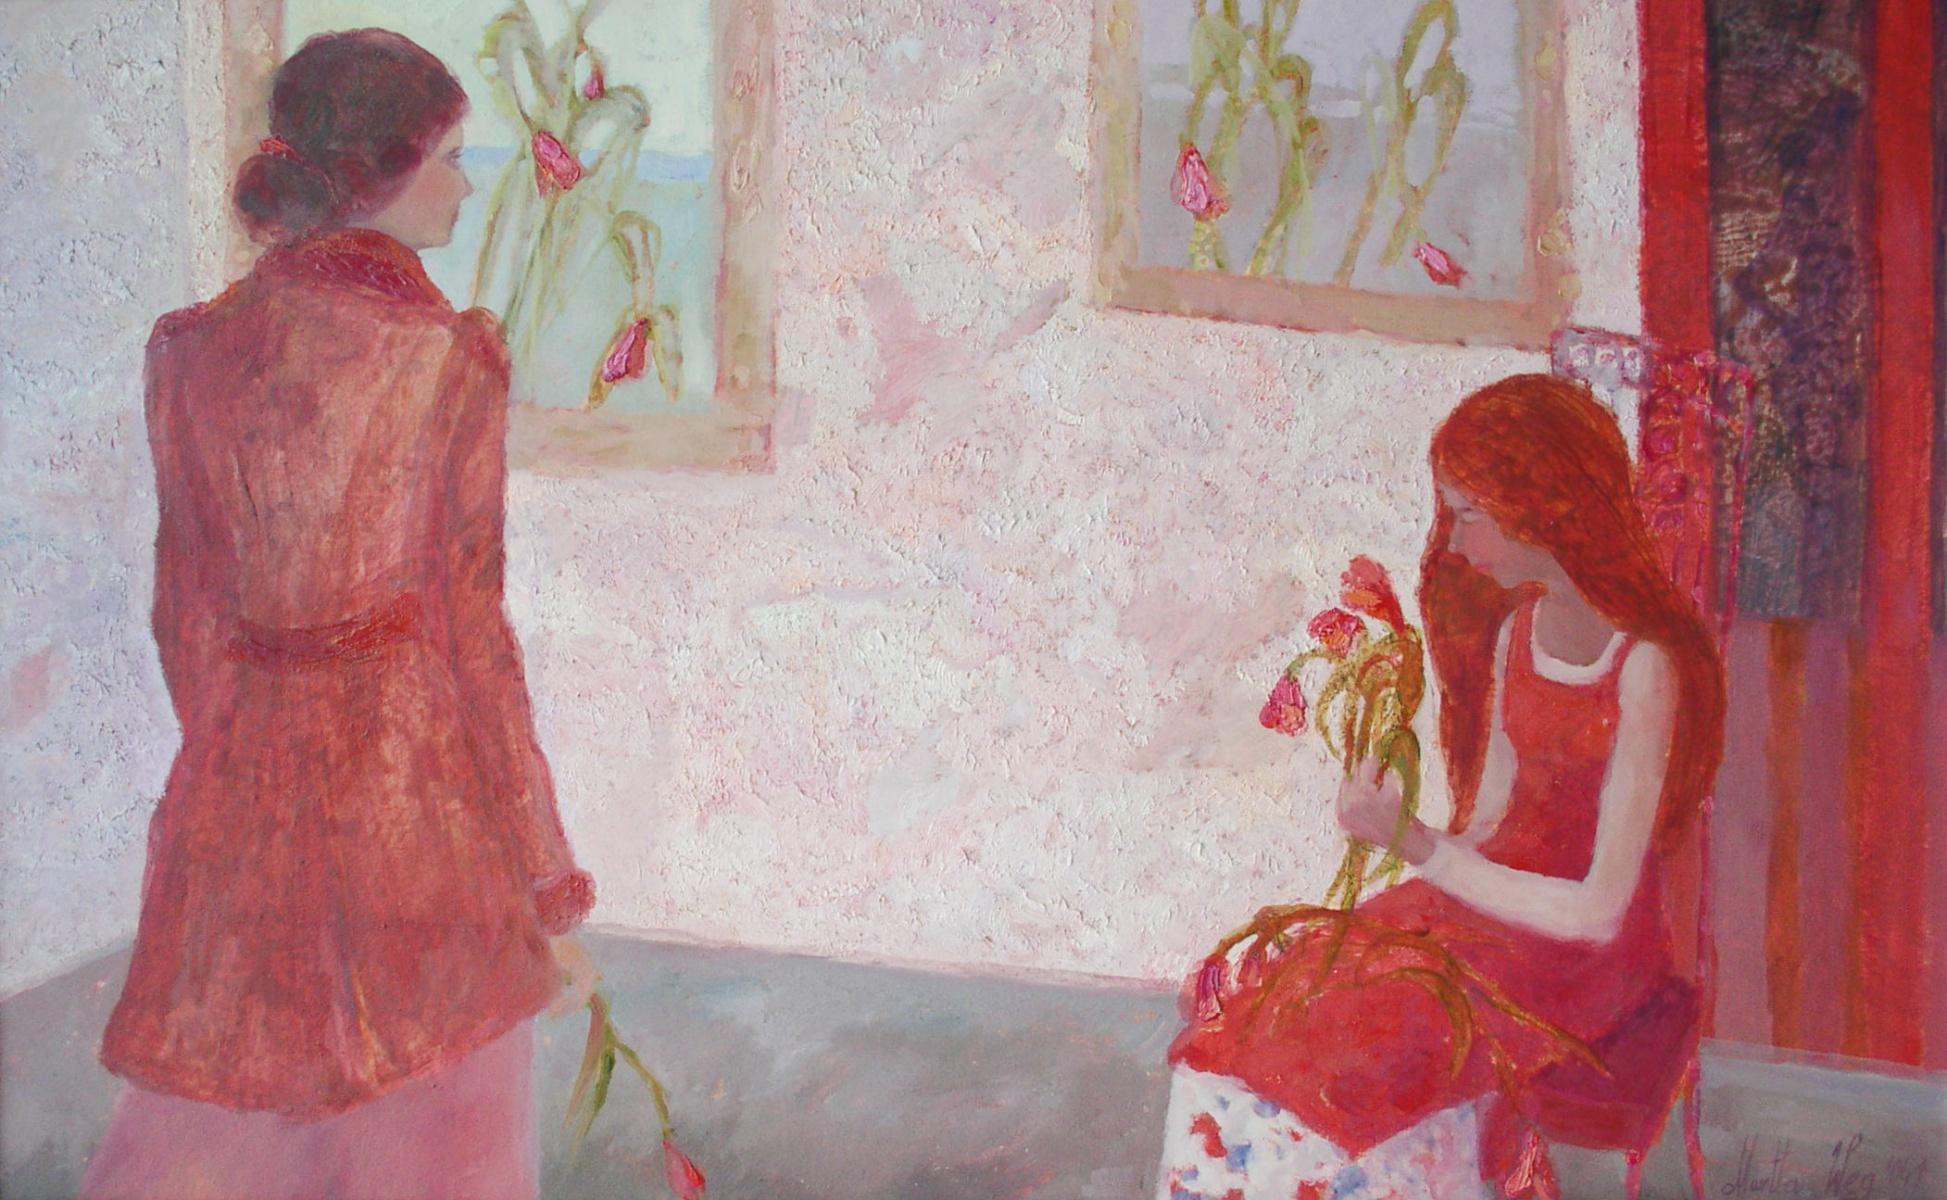 Girls with tulips - XXIe siècle, peinture figurative à l'huile, colorée, intérieur